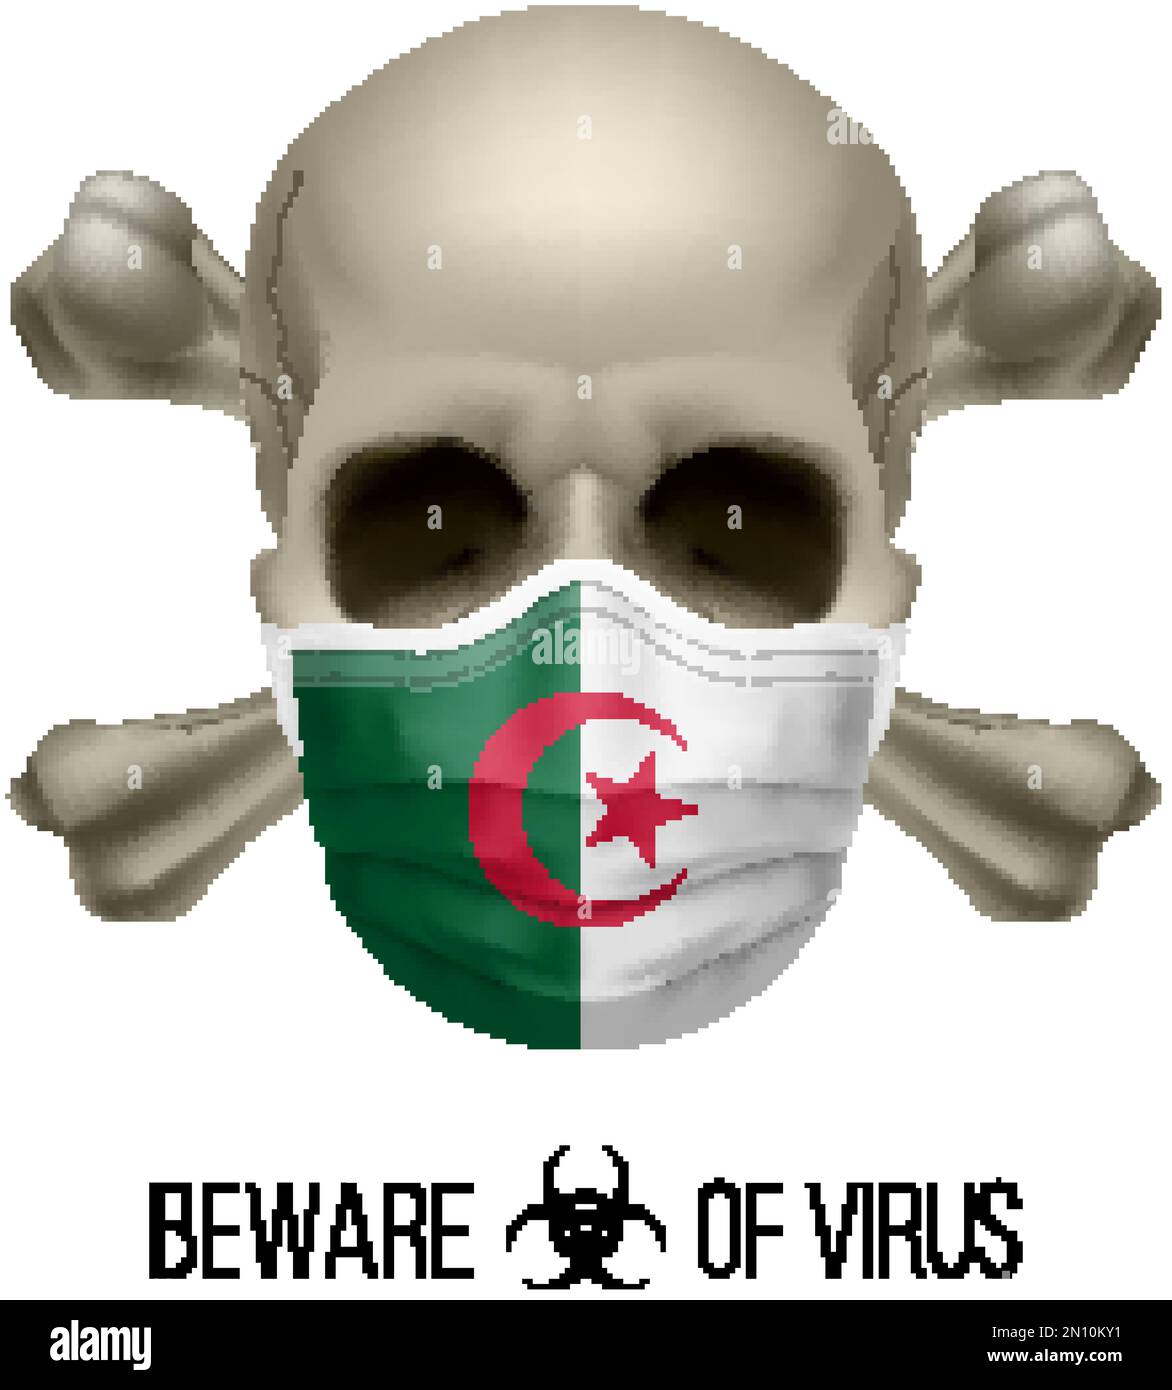 Menschlicher Schädel mit Kreuz und Operationsmaske in der Farbe der Nationalflagge Algerien. Maske in Gestalt der algerischen Flagge und des Totenkopfes als Konzept des Dre Wa Stock Vektor